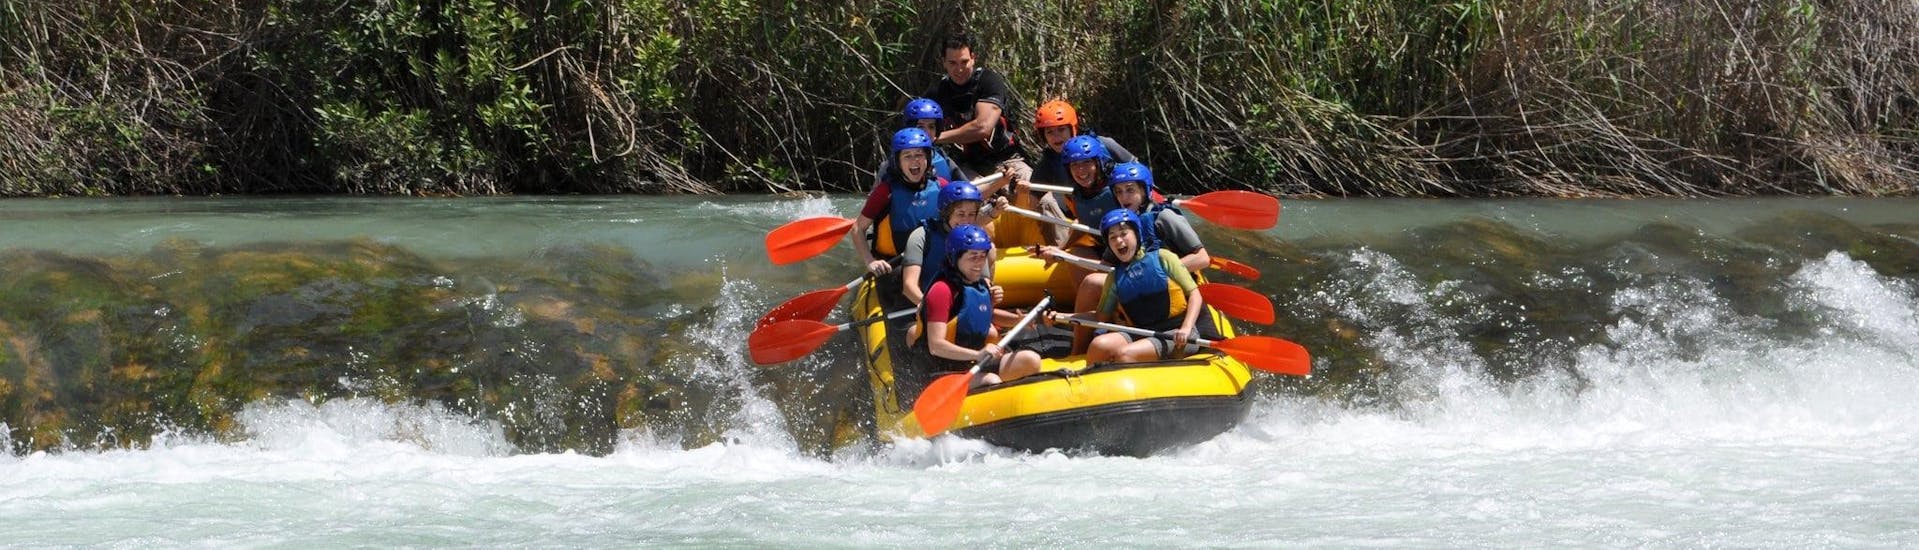 Participantes bajando en balsa el río Cabriel en una actividad ofrecida por Cabriel Roc.